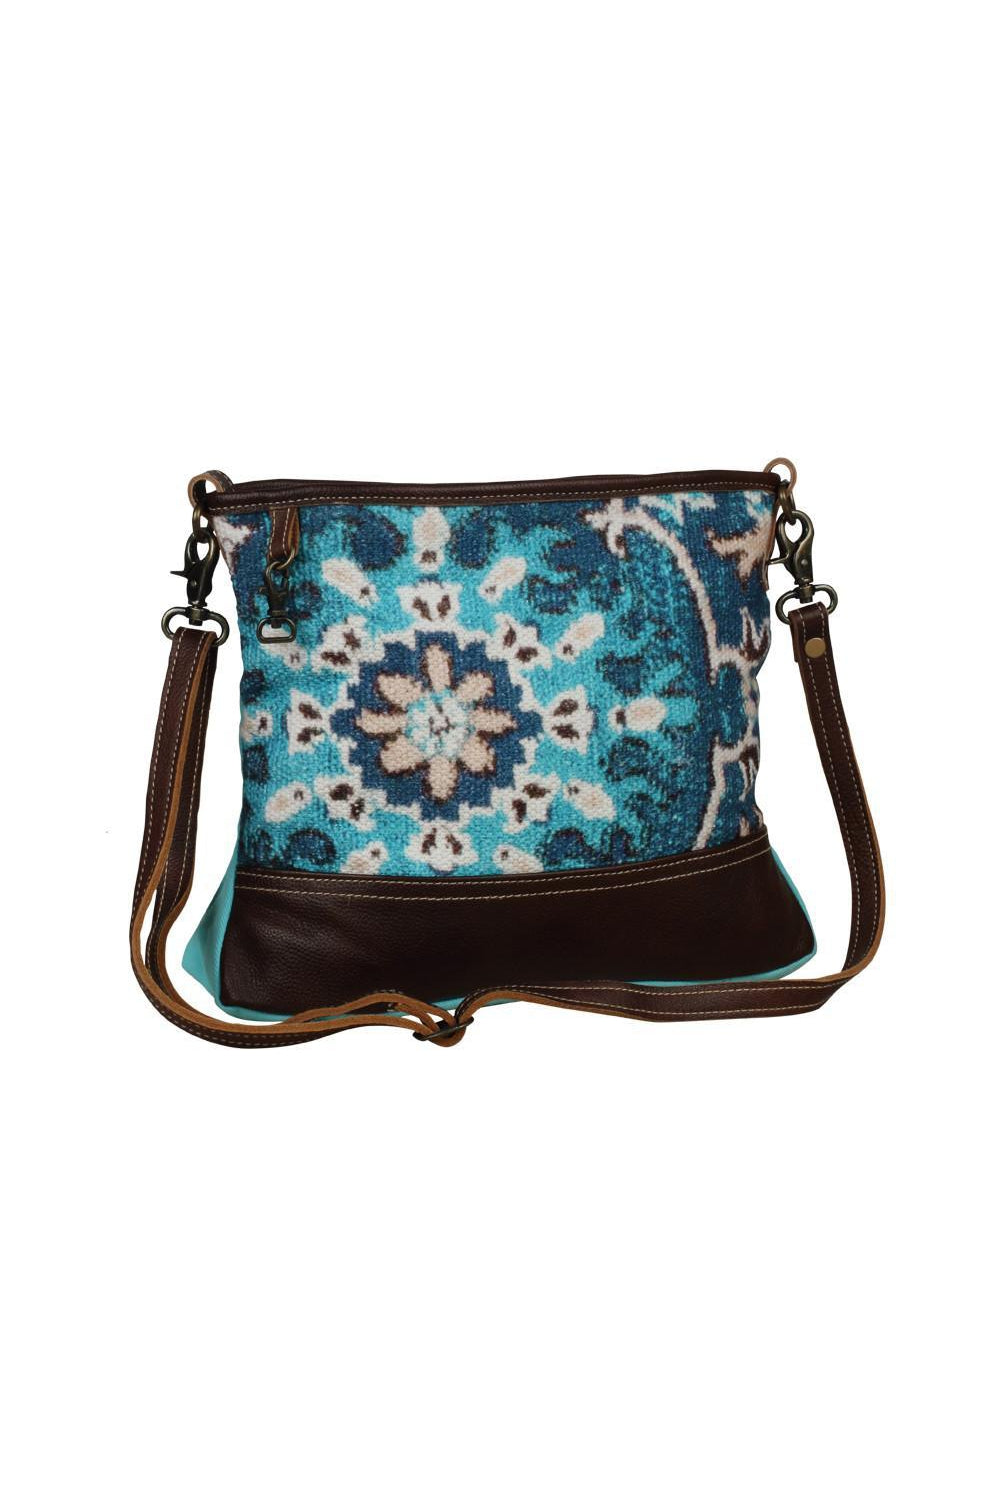 Aqua Small Sparkling Shoulder Bag - 100% Exclusive